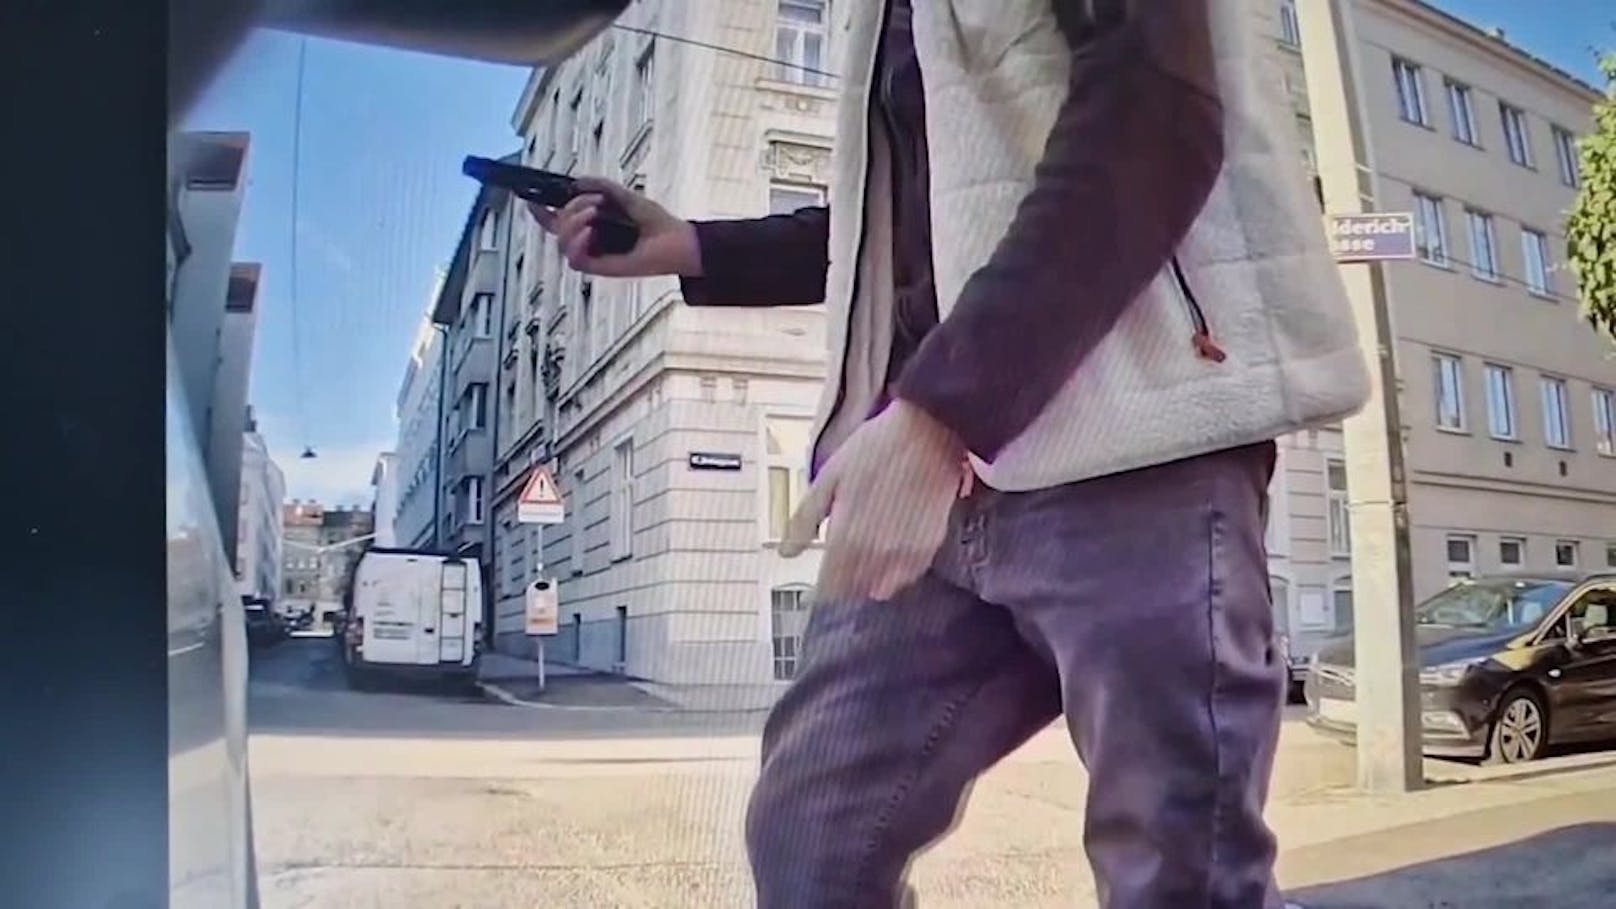 Scooter-Fahrer zückt nach Beinahe-Crash in Wien Pistole